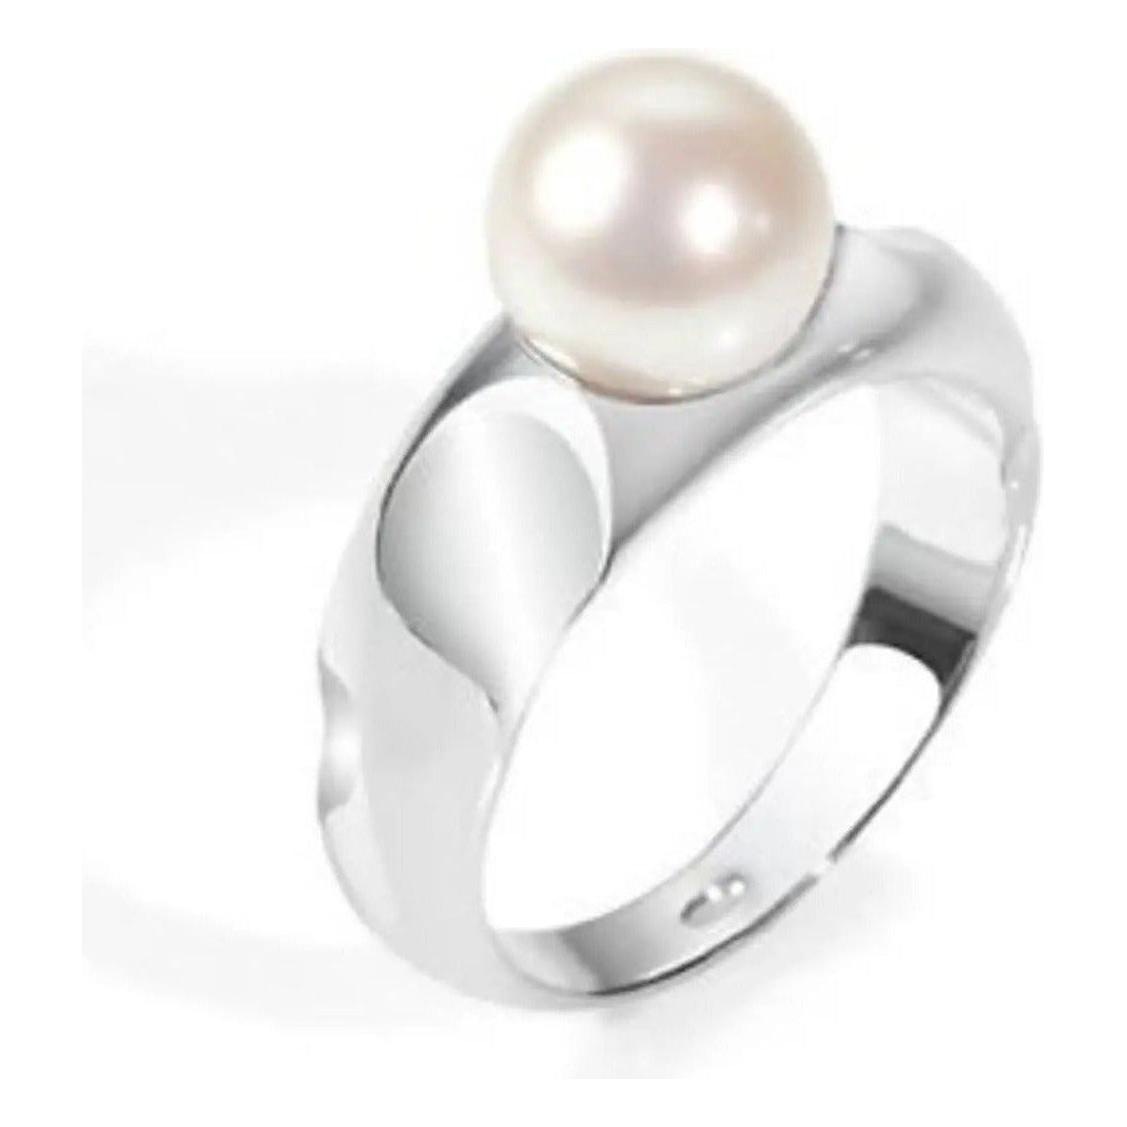 Ring MORELLATO Mod. PERLA size 016 Con Perle coltivate / Cultured Pearls MORELLATO GIOIELLI